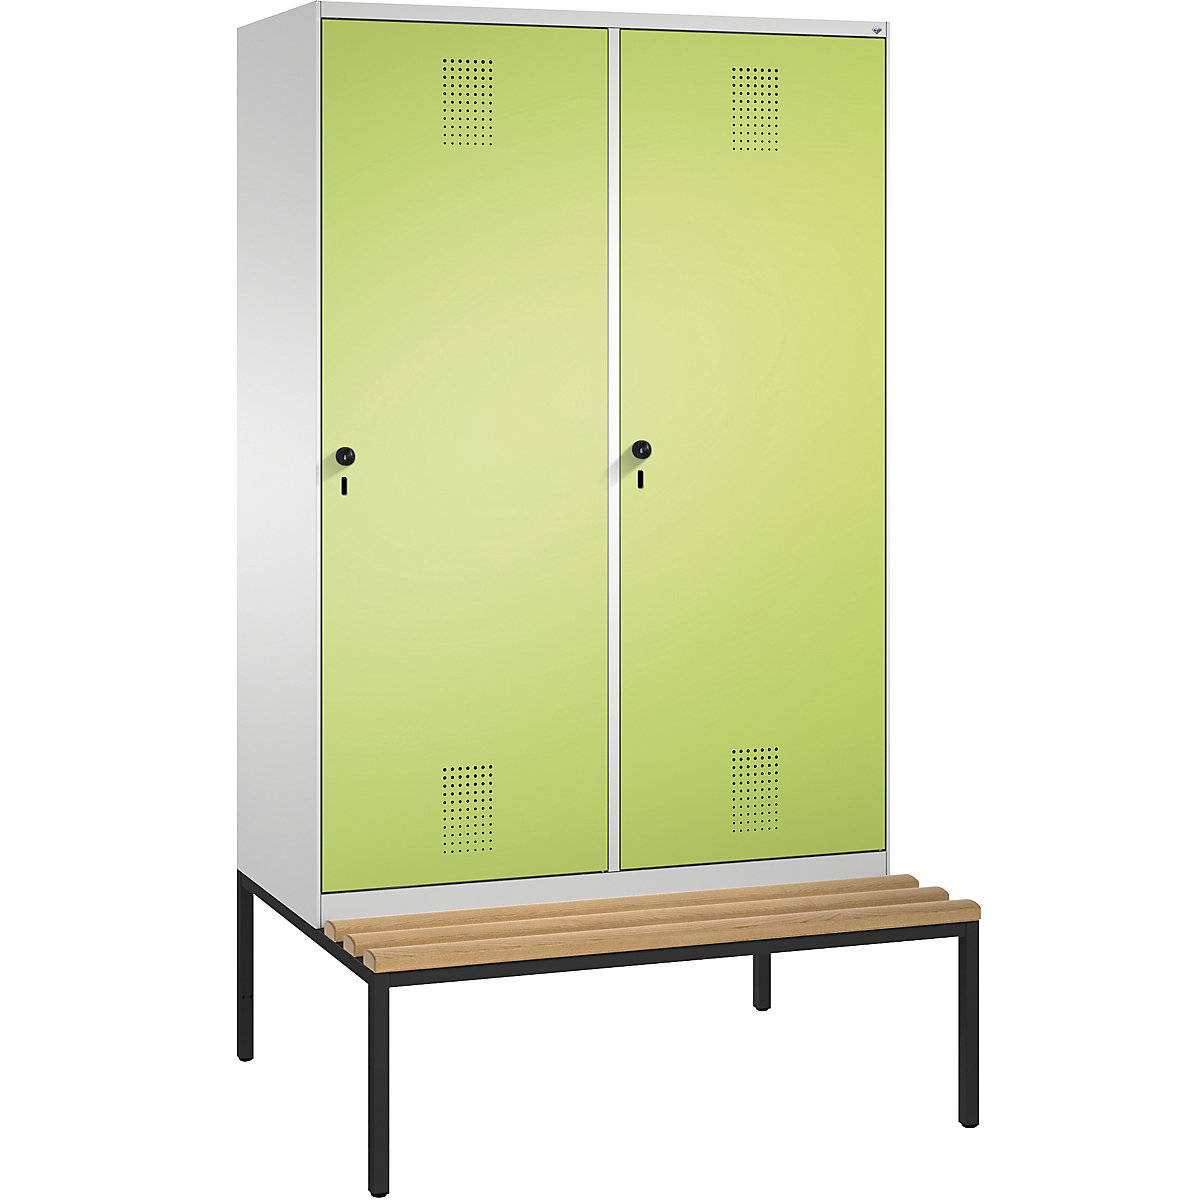 Šatní skříň s lavicí EVOLO s dveřmi přes 2 oddíly – C+P, 4 oddíly, 2 dveře, šířka oddílu 300 mm, světlá šedá / viridianová zelená-10